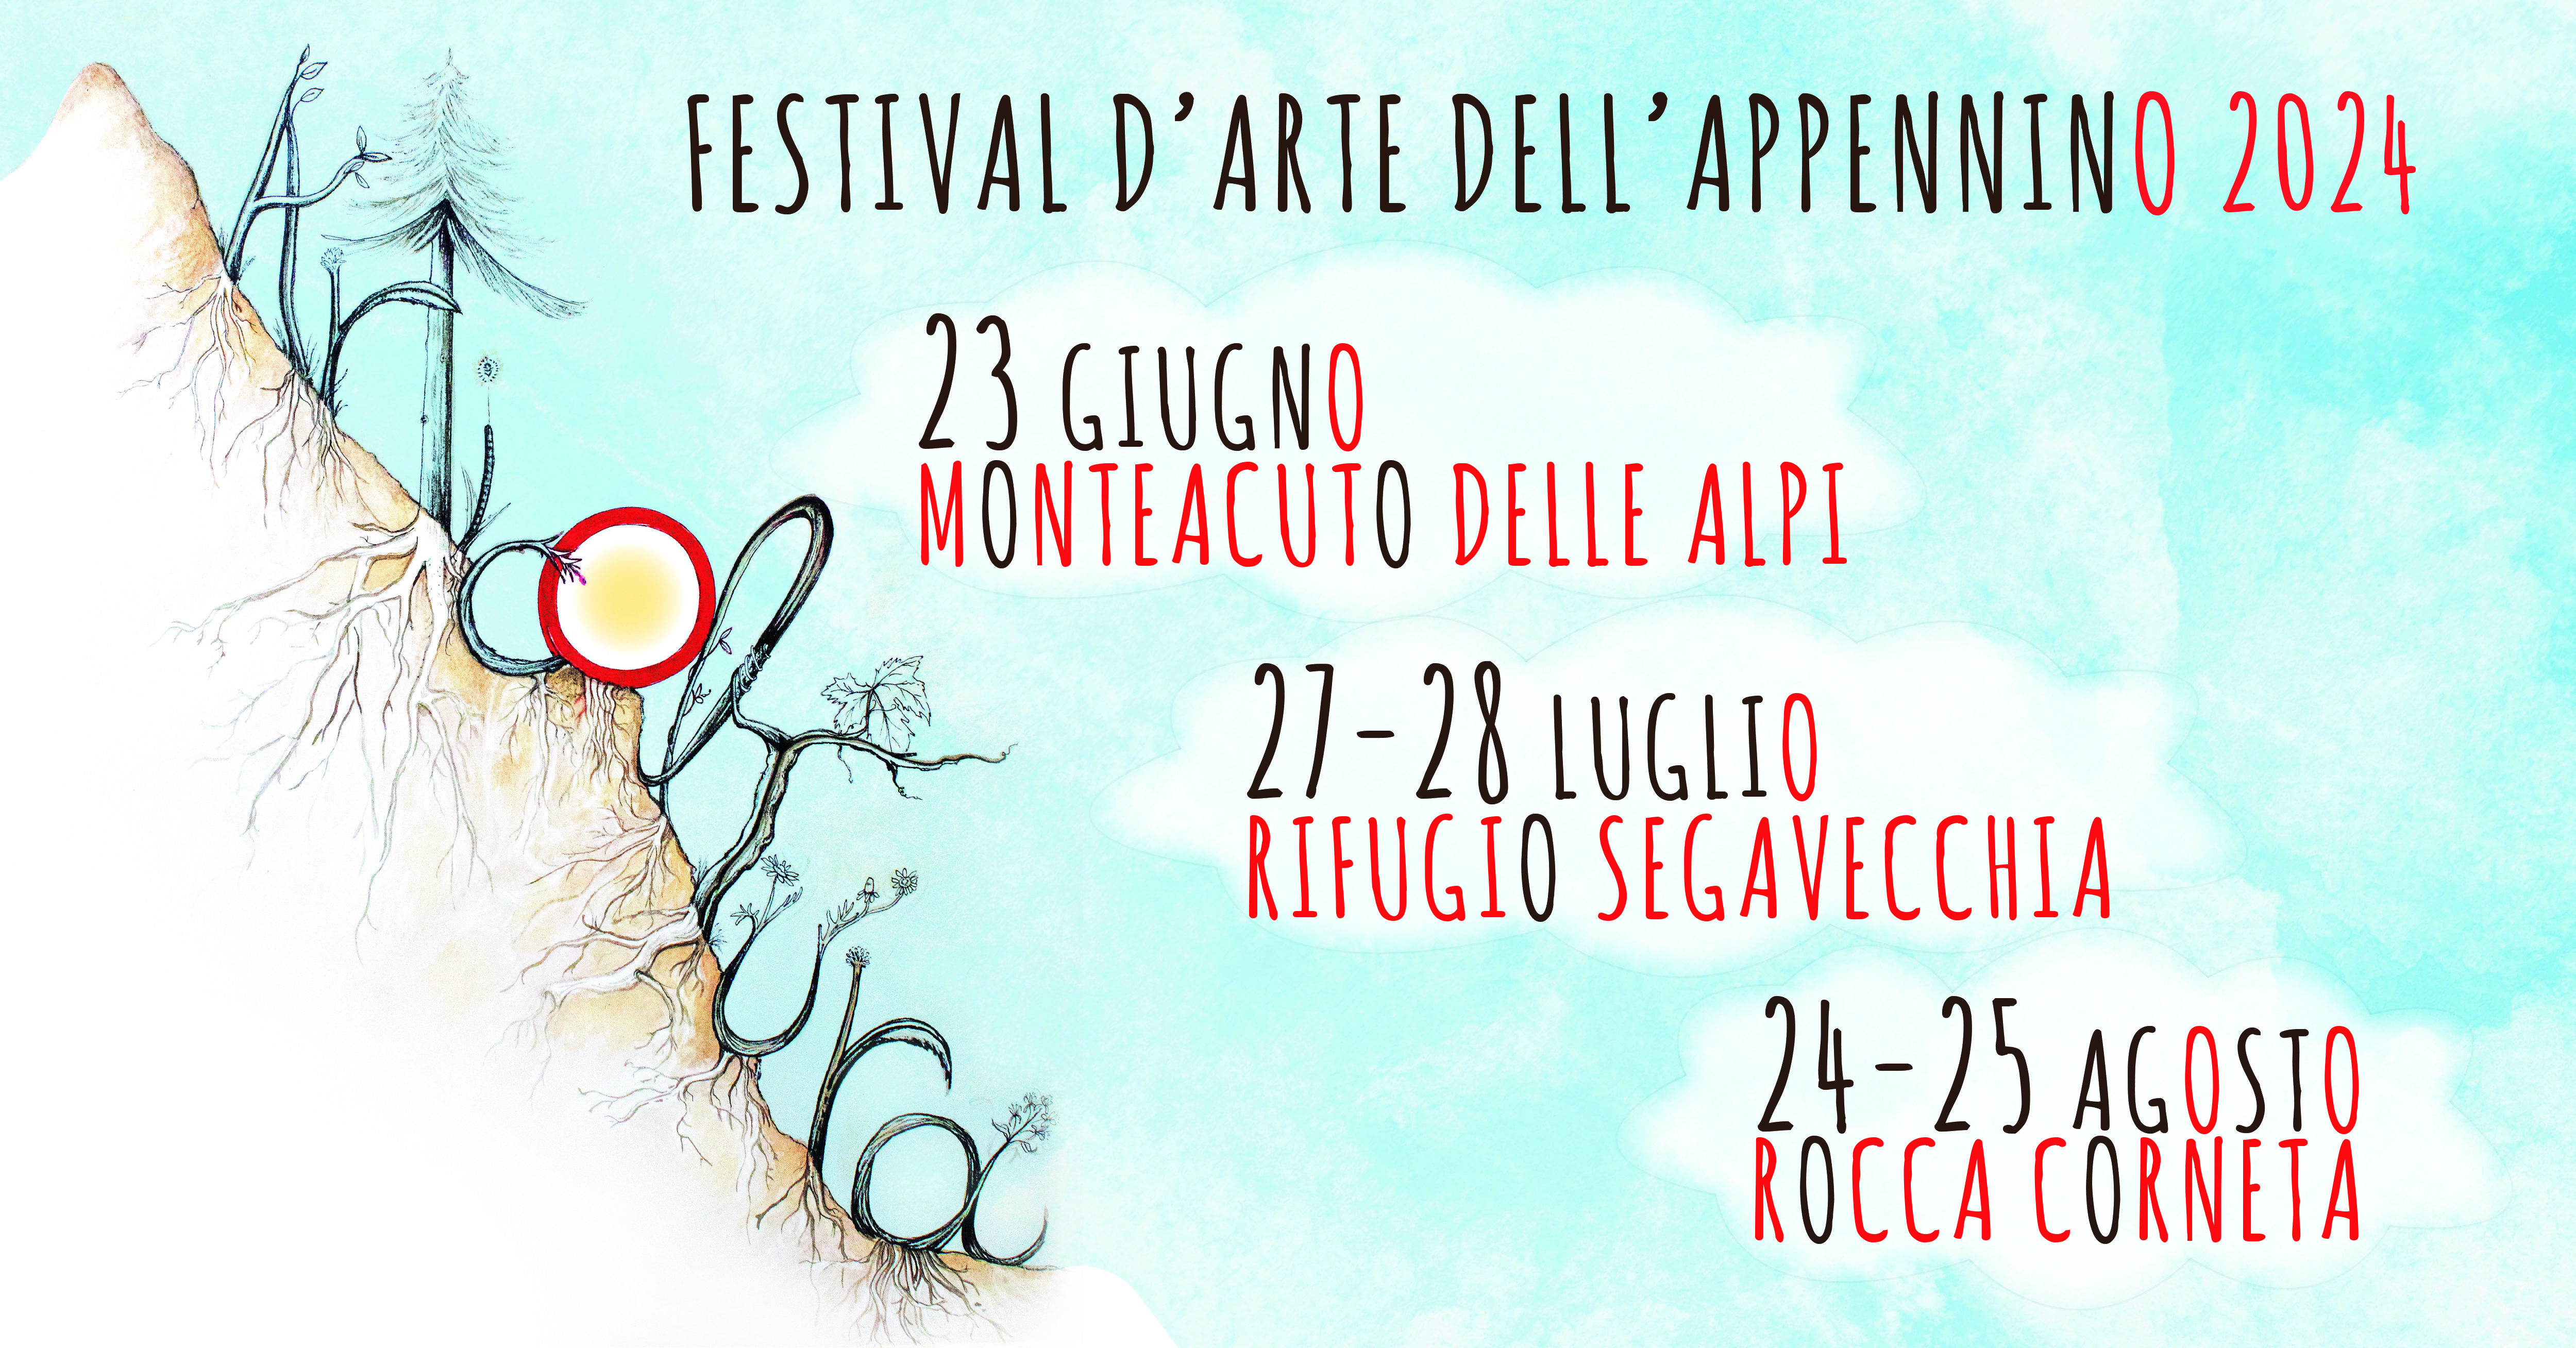 Articoltura – Festival d’Arte dell’Appennino torna a Segavecchia_ 27 e 28 luglio